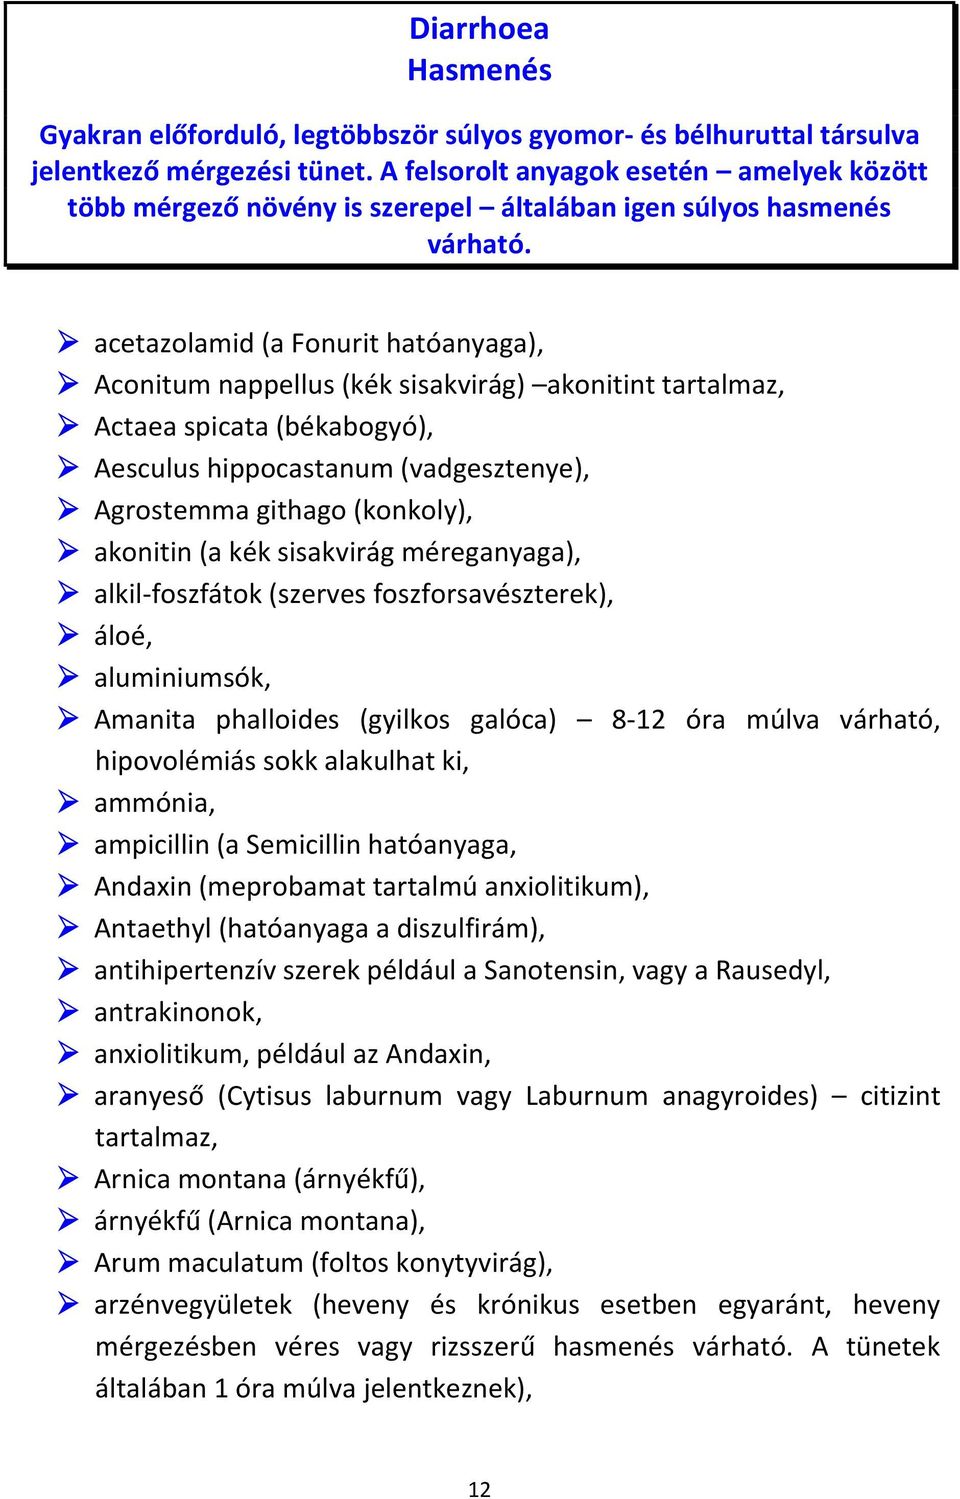 acetazolamid (a Fonurit hatóanyaga), Aconitum nappellus (kék sisakvirág) akonitint tartalmaz, Actaea spicata (békabogyó), Aesculus hippocastanum (vadgesztenye), Agrostemma githago (konkoly), akonitin